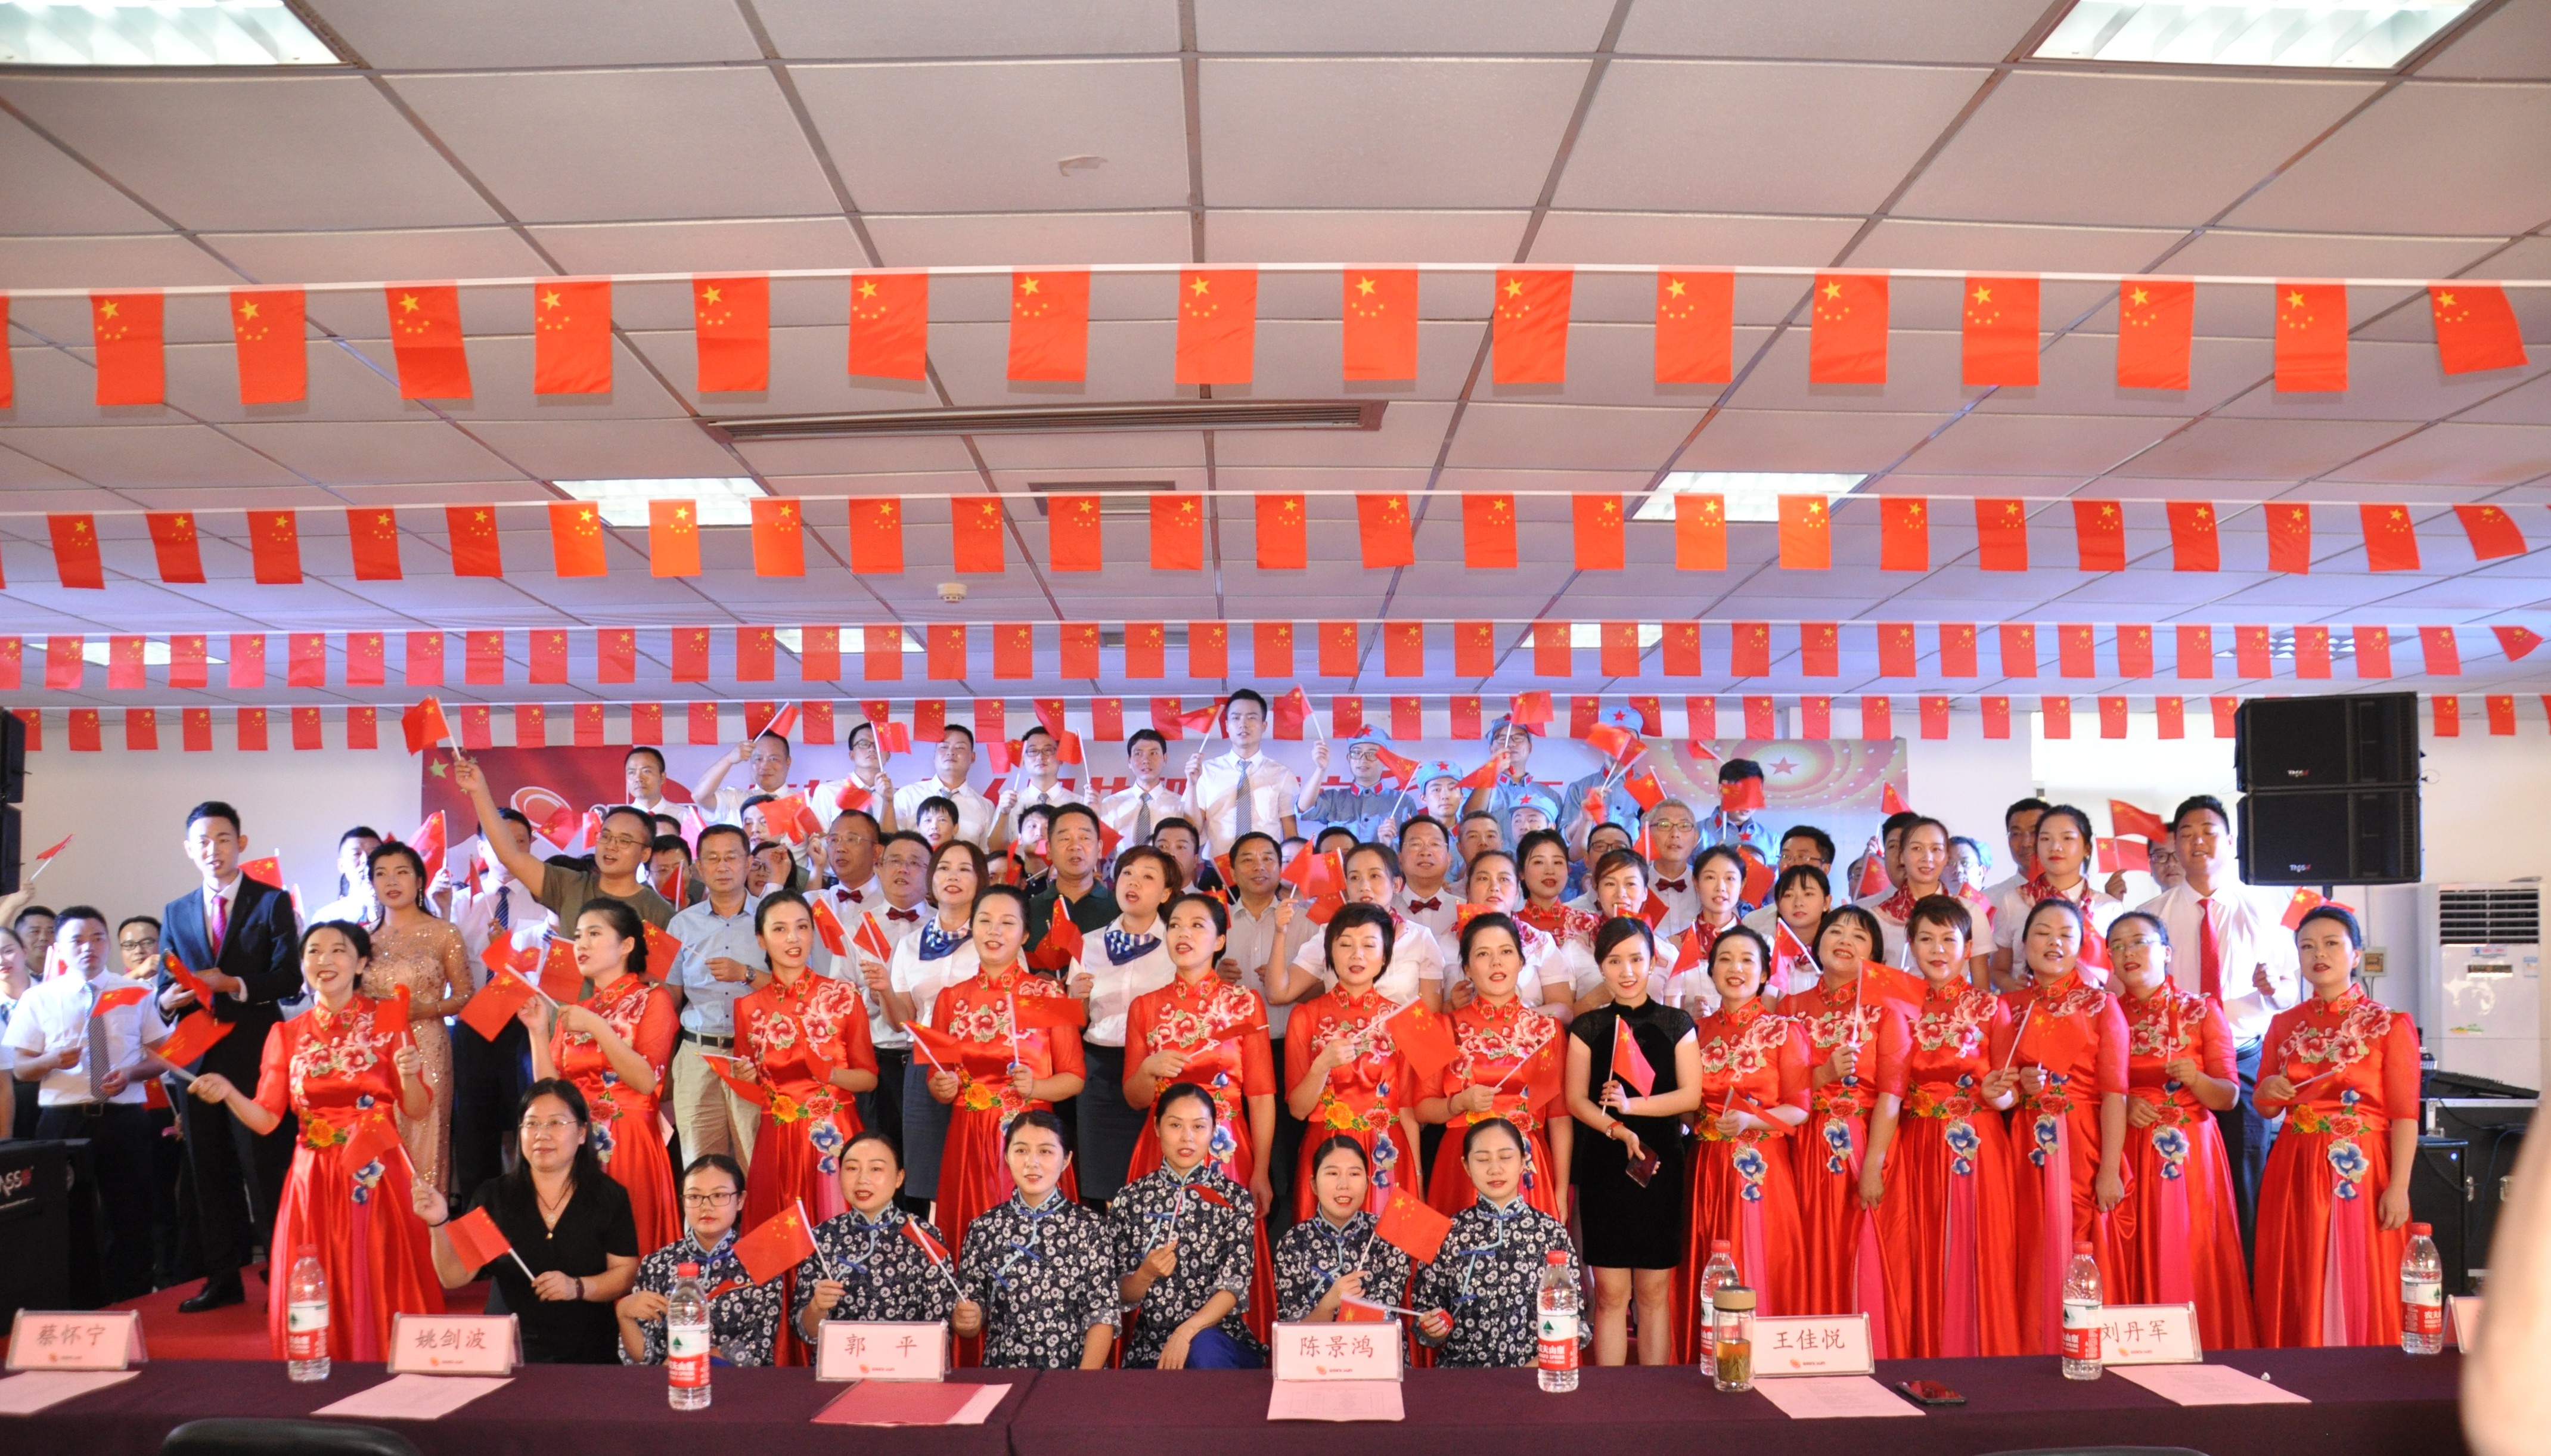 米乐M6在线注册(中国)有限公司隆重举办庆祝中华人民共和国成立70周年“普照杯”歌咏比赛